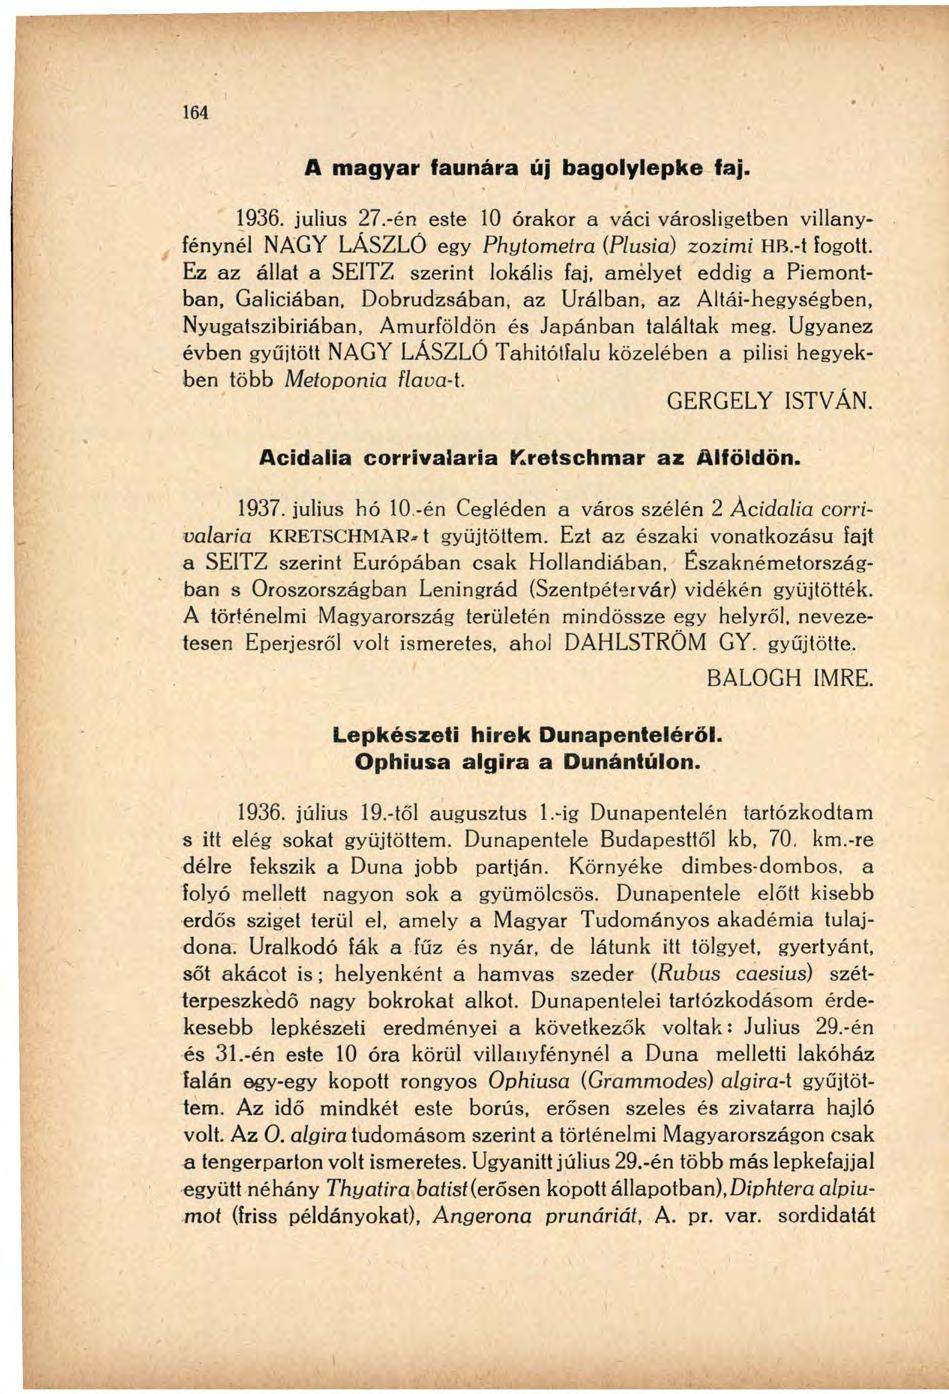 A magyar faunára új bagolylepke faj. 1936. július 27.-én este 10 órakor a váci városligetben villanyfénynél NAGY LÁSZLÓ egy Phytometra (Plusiá) zozimi HB.-t fogott.